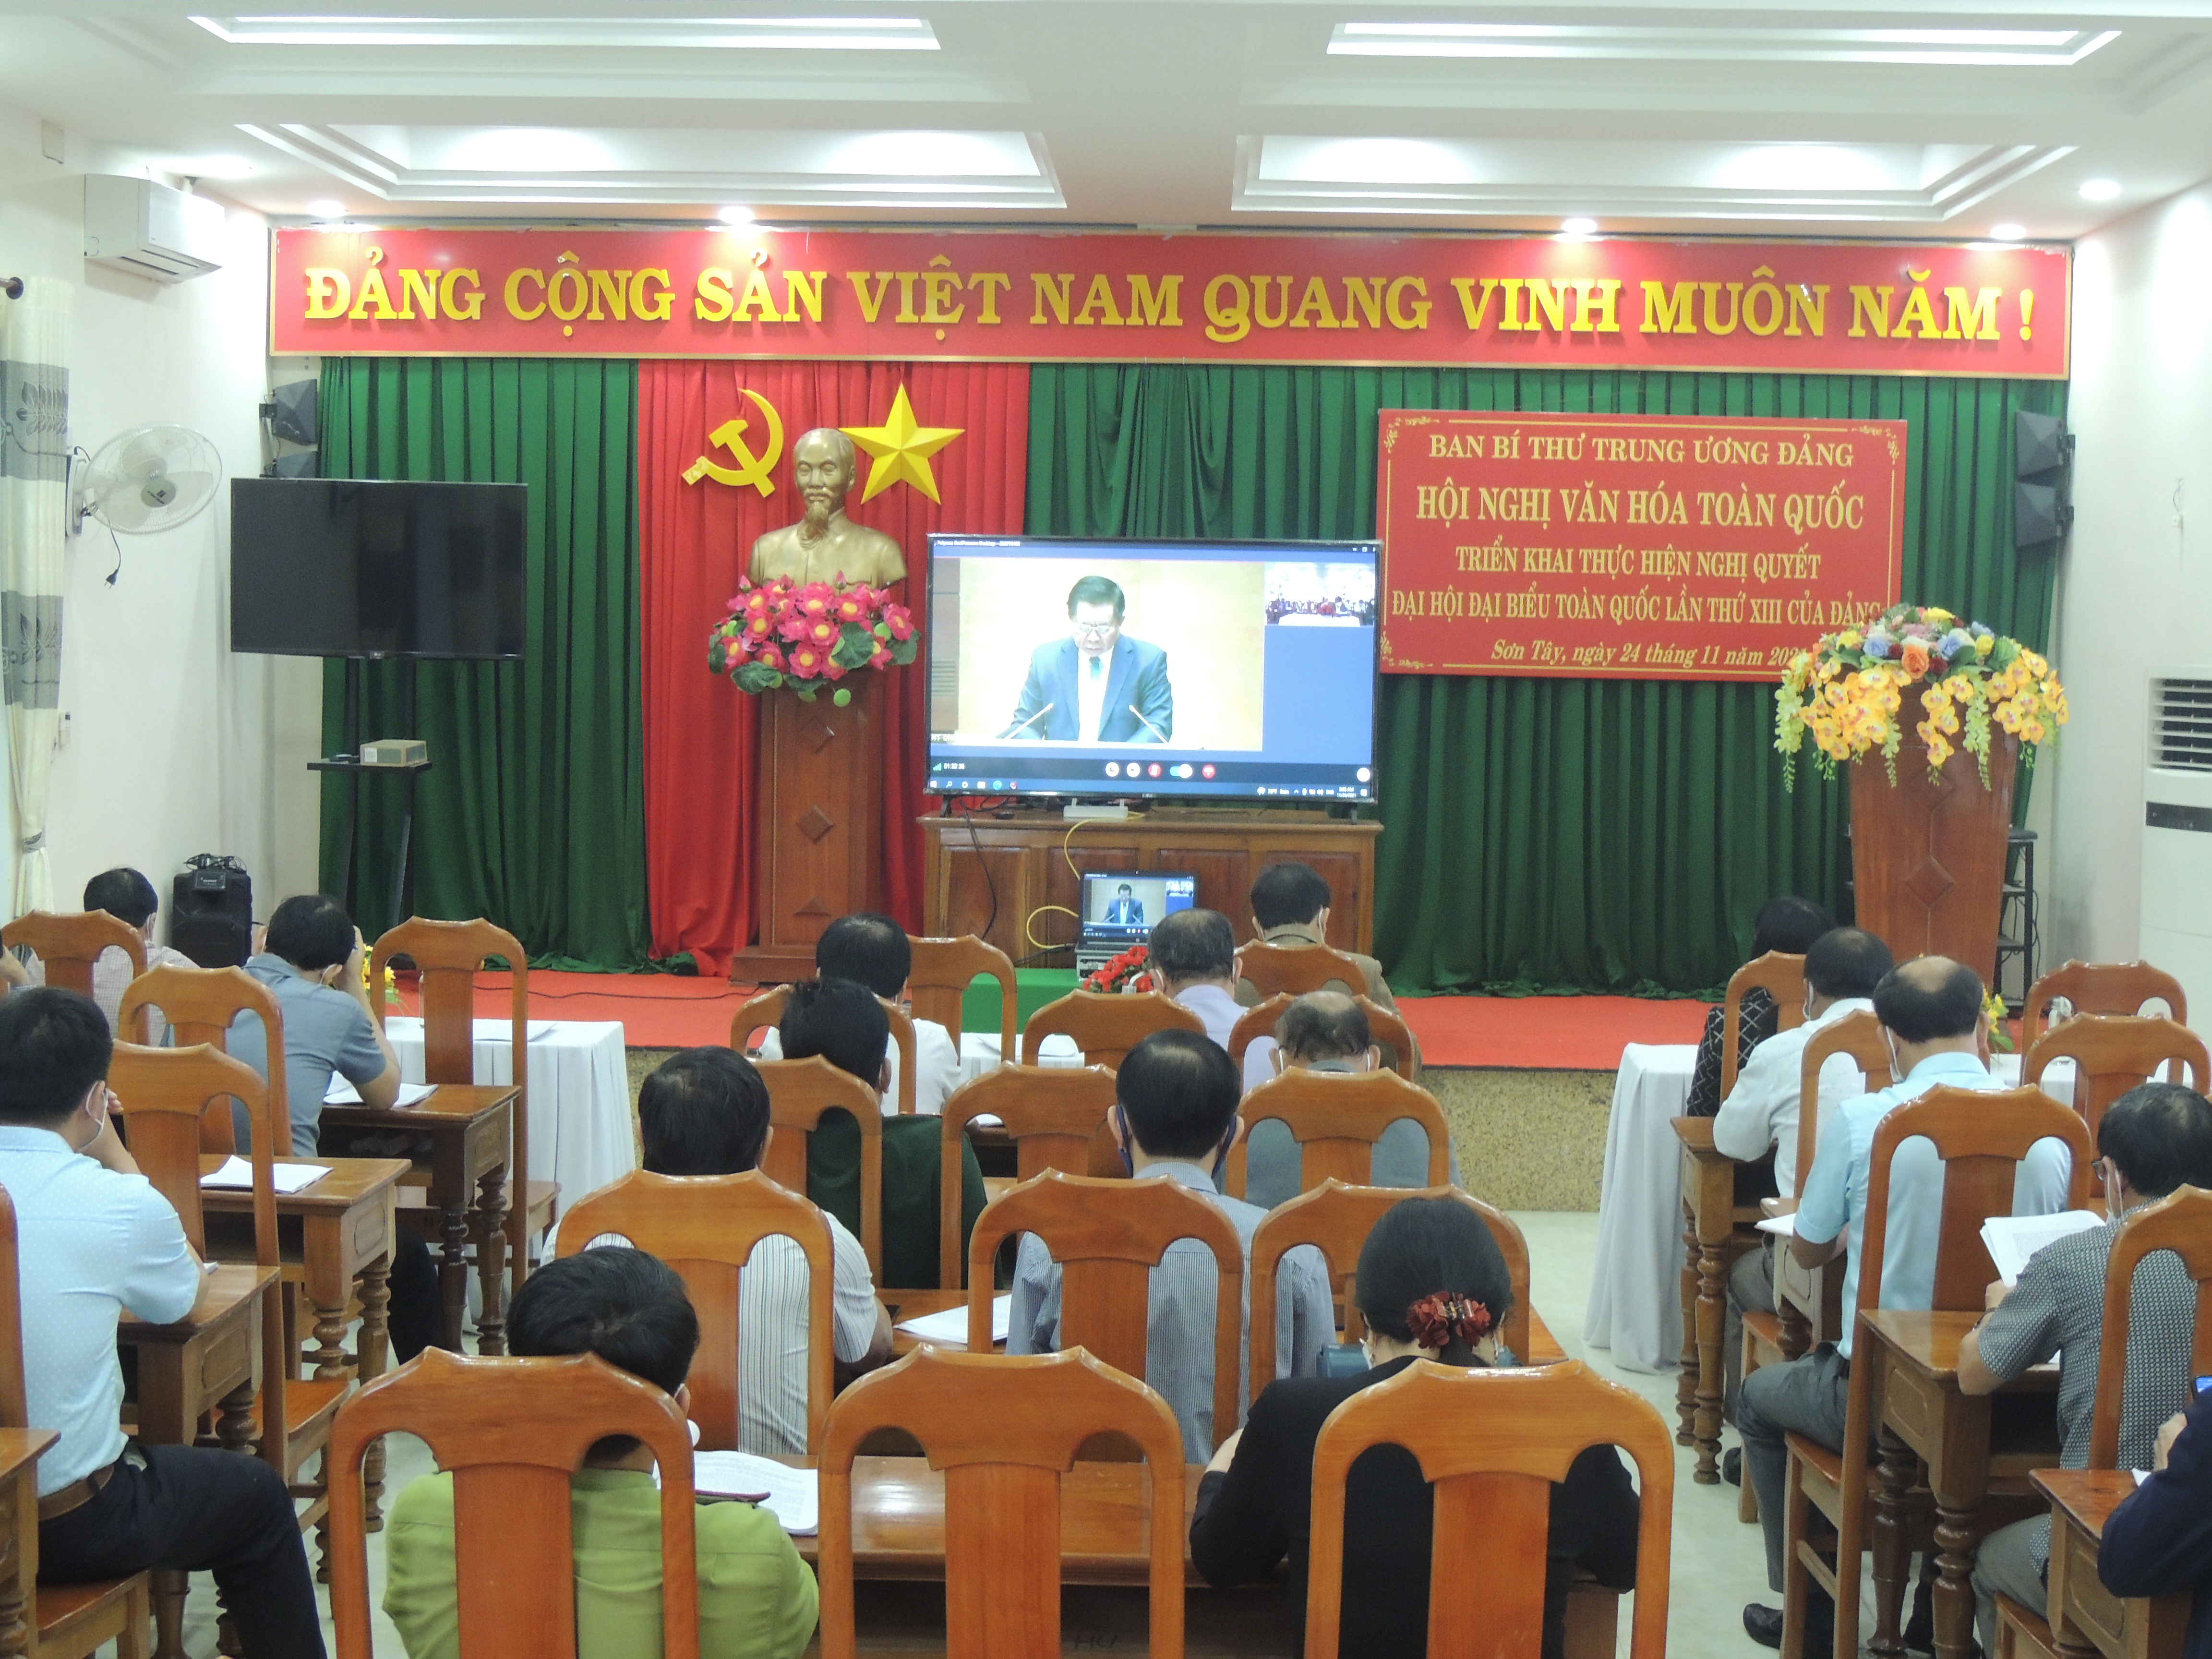 Sơn Tây tham dự Khai mạc Hội nghị Văn hóa toàn quốc trực tuyến